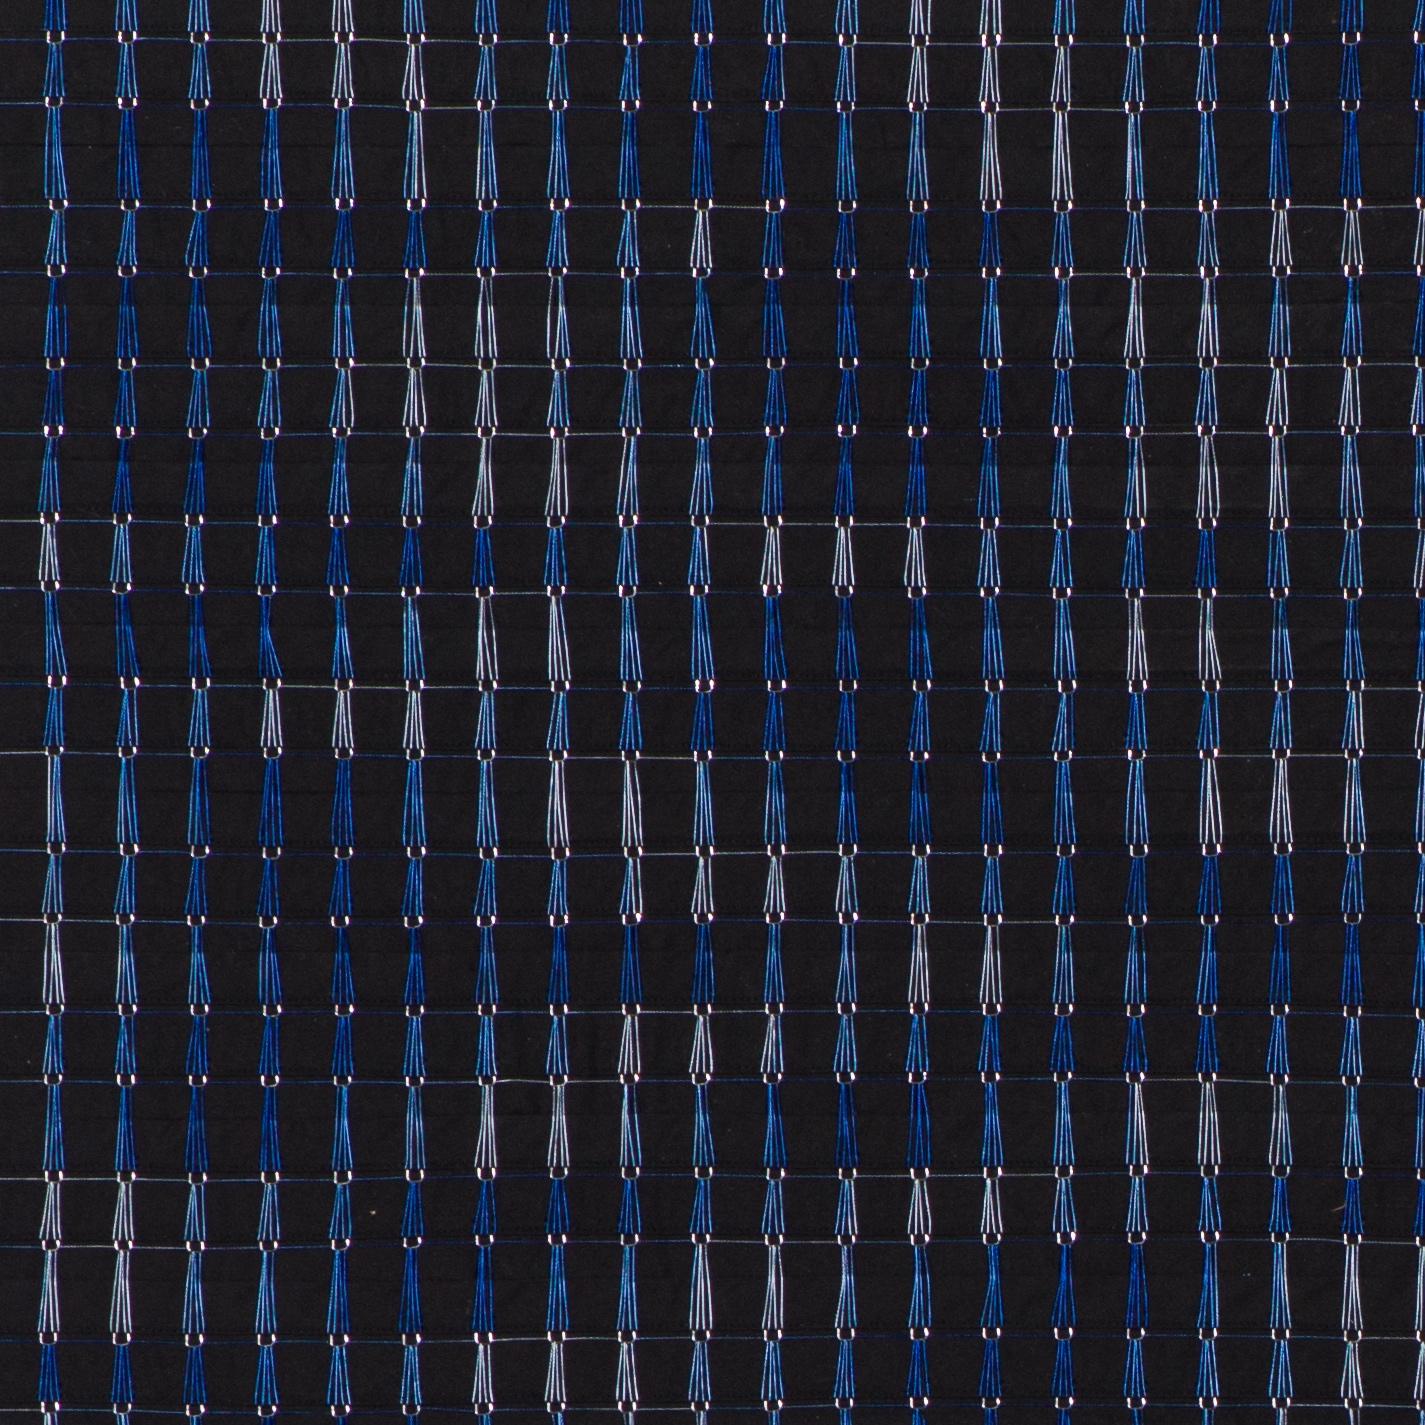 Planche noire et bleue - Contemporain Art par Denise Yaghmourian